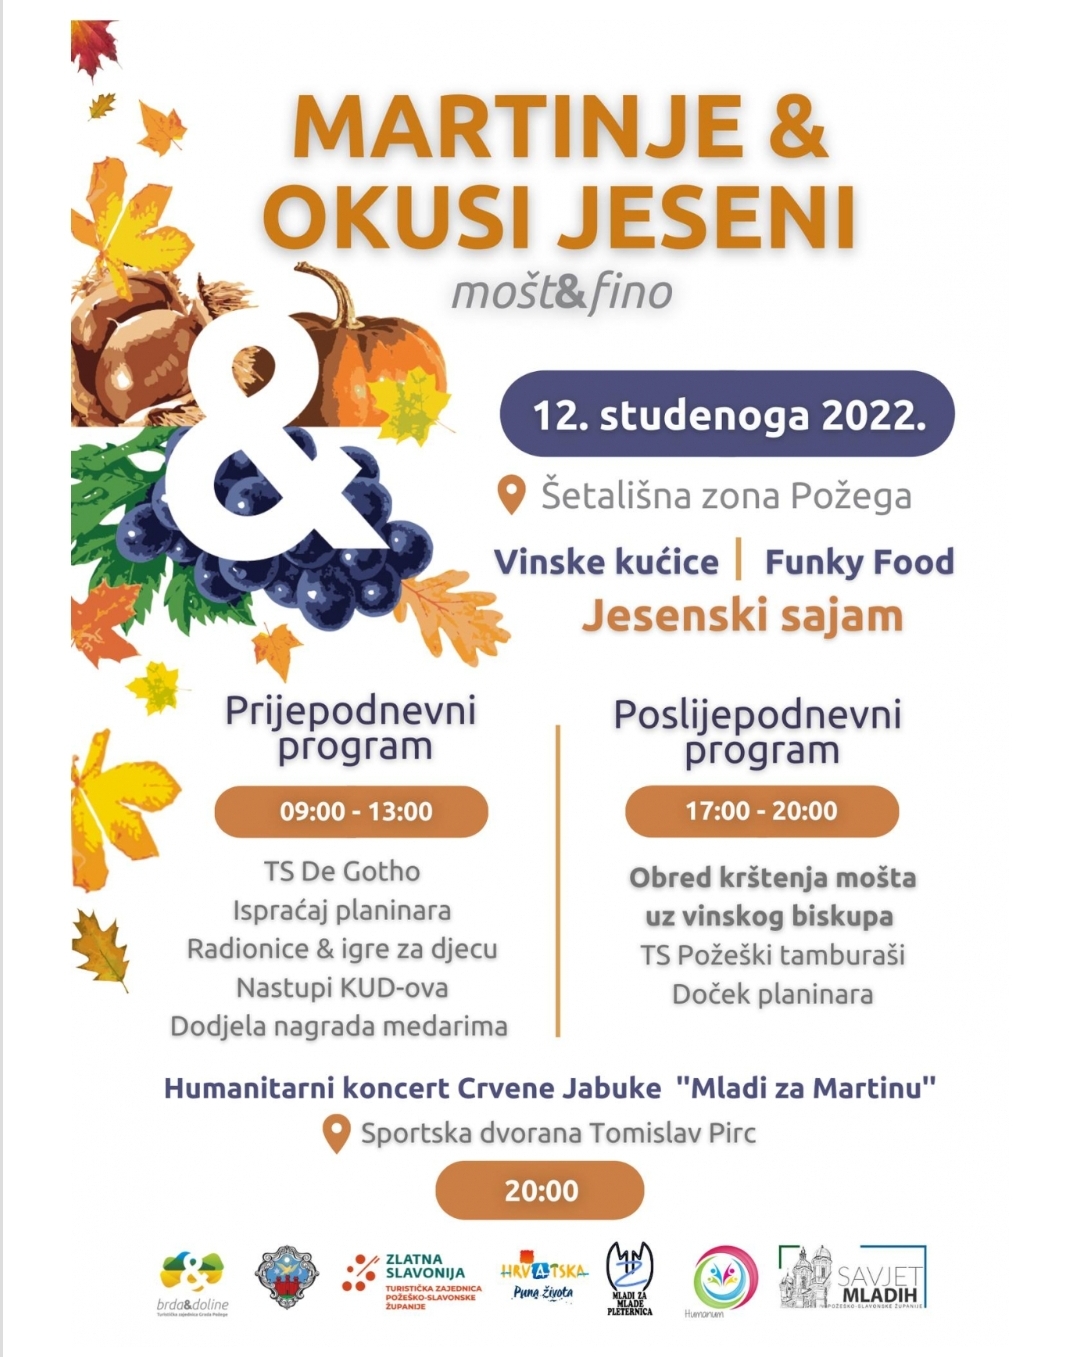 Požega.eu | Okusi jeseni u Požegi 2022. – Martinje i humanitarni koncert za Martinu